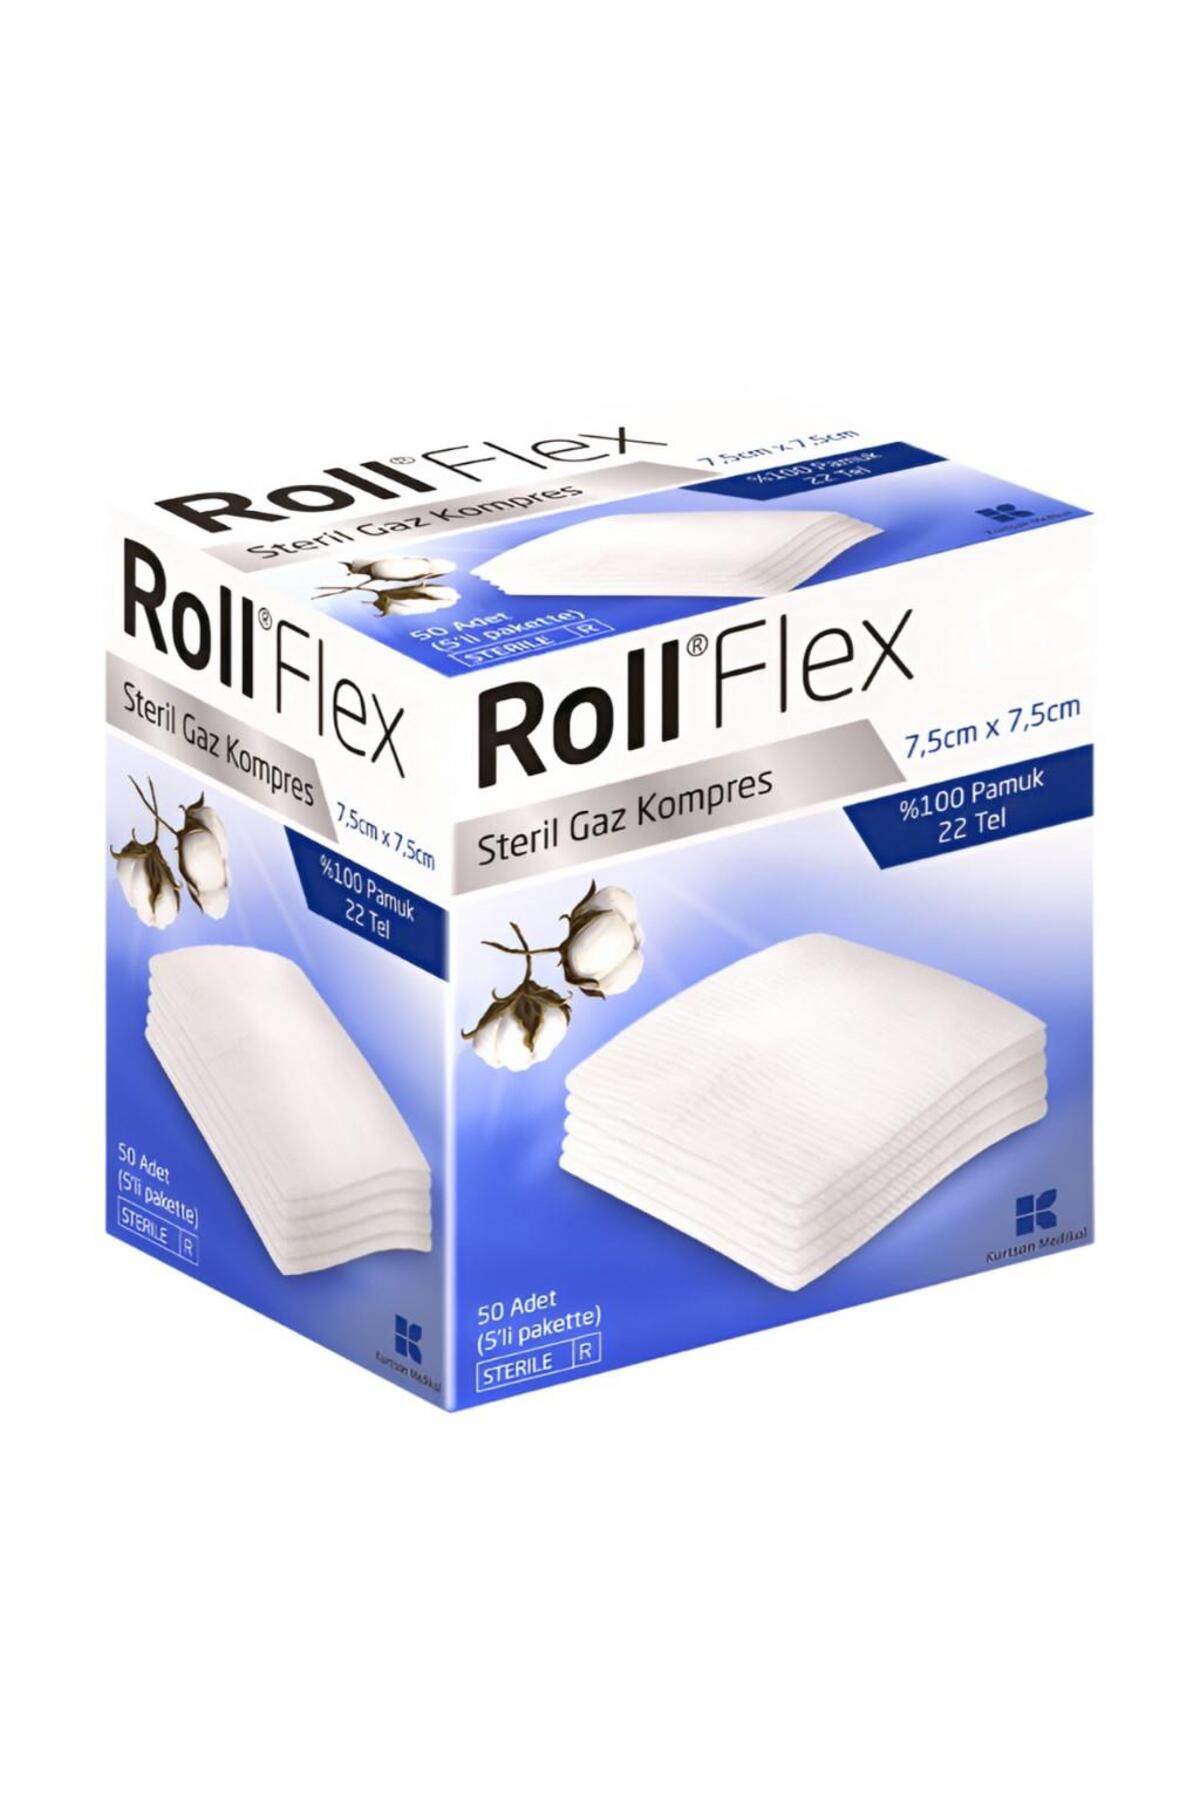 Roll Flex Steril Gaz Kompresi 50 Li ( 7,5 Cm X 7,5 Cm 5 Li Pakette )